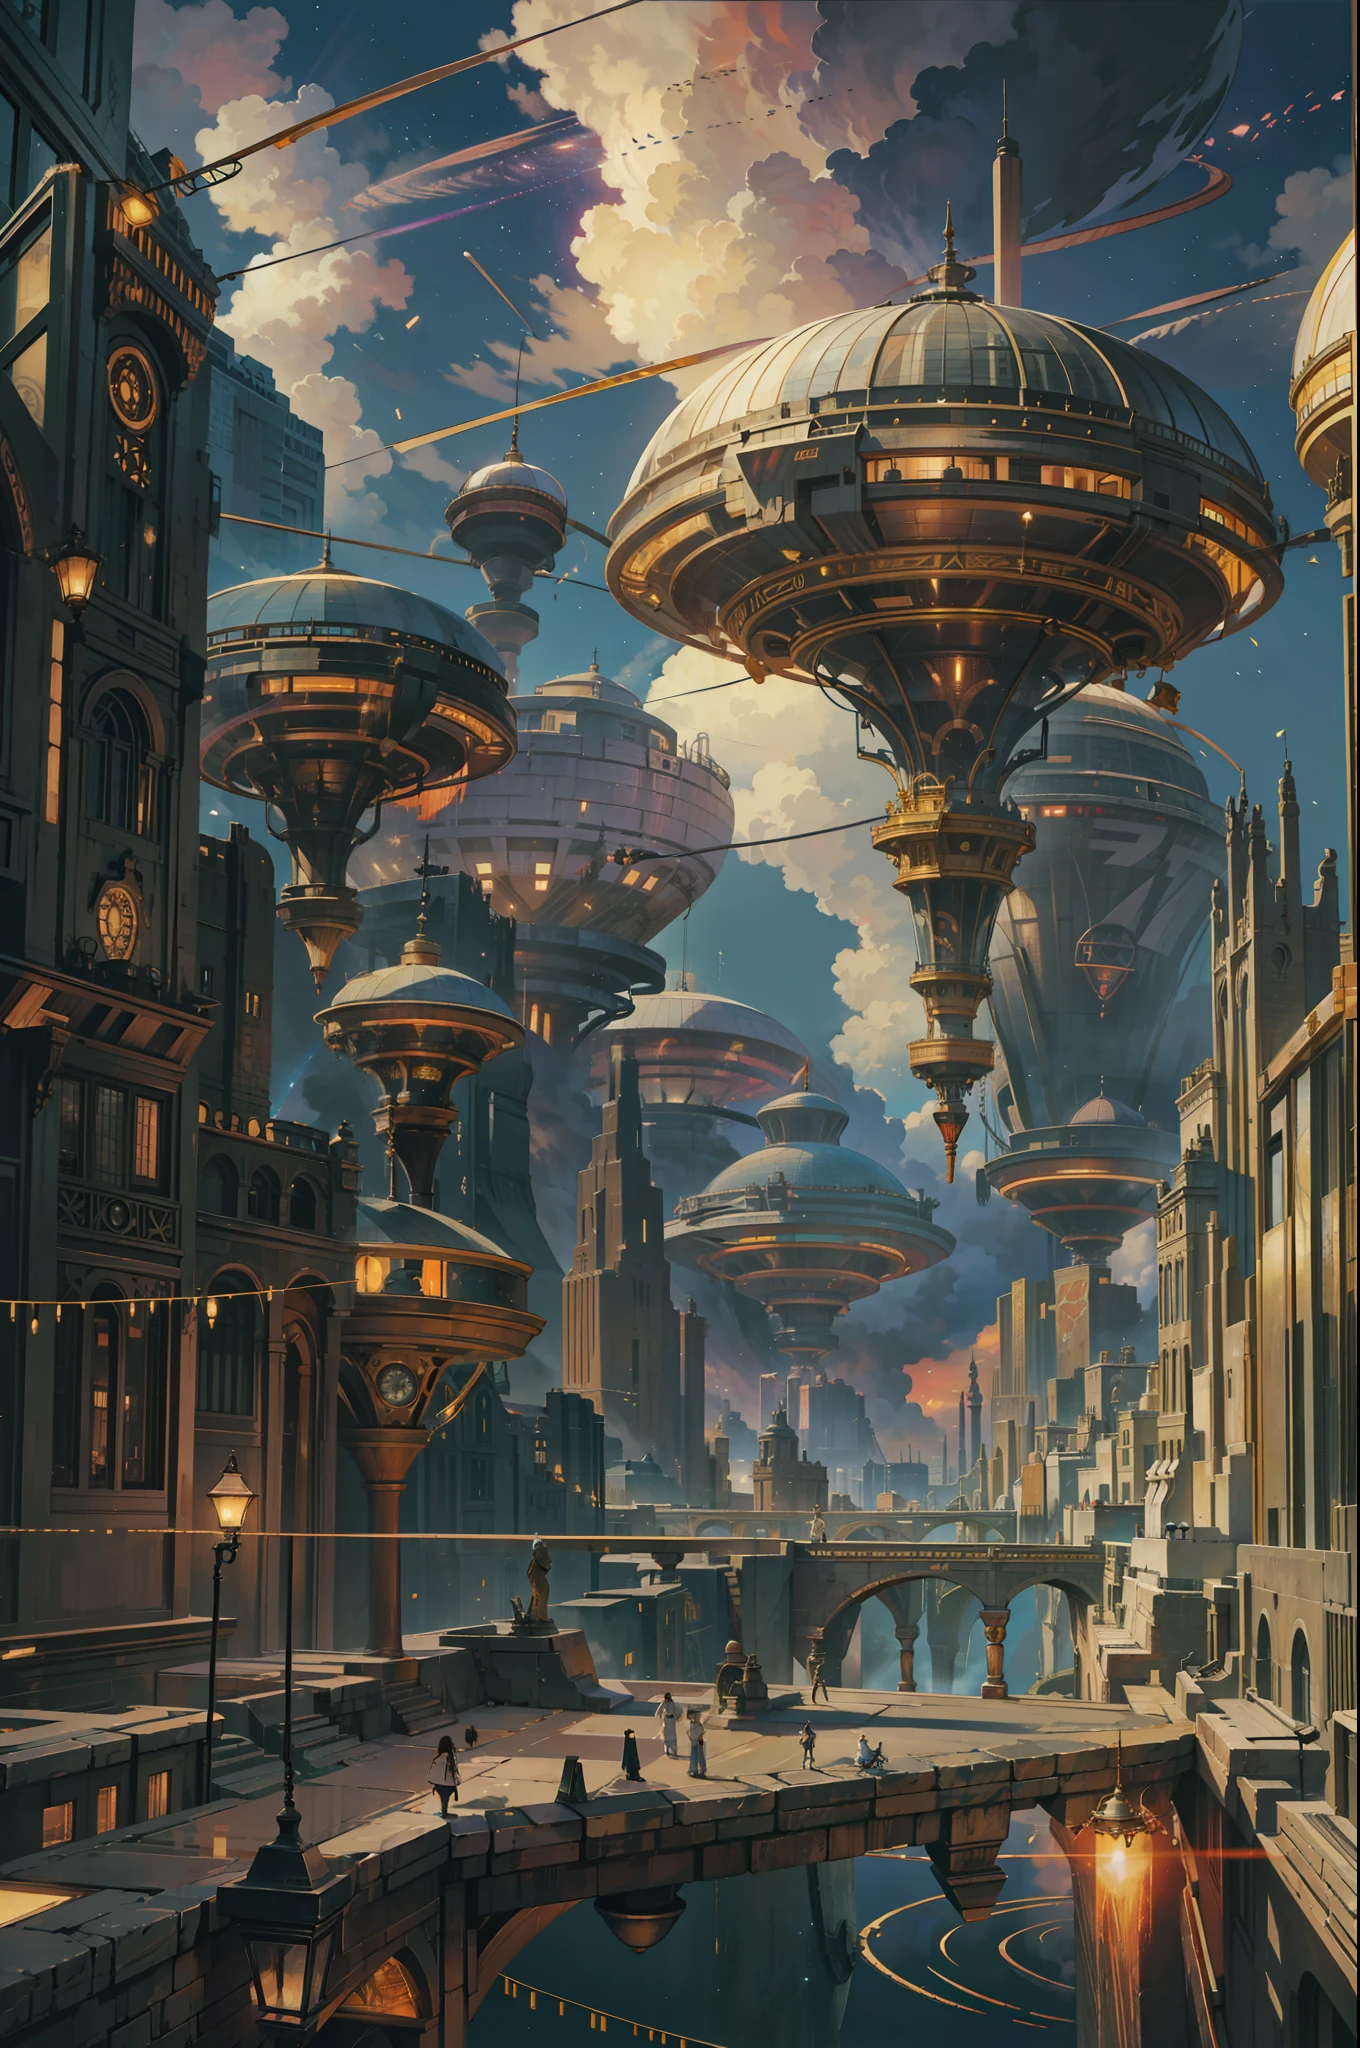 Campo de visión ultra amplio，（levitando：1.5），（Una enorme ciudad steampunk de doble anillo flotando en el espacio：1.3），（Ilumina la futurista ciudad steampunk：1.4），（Nubes espesas：1.4），（Estilo de Makoto Shinkai：1.4），Alegrarse，calidad perfecta，enfoque claro（desorden - hogar：0.8）， （obra maestra：1.2）， （siendo realista：1.2） ，（con luz brillando：1.2）， （la mejor calidad）， （Cielo estrellado detallado：1.3） ，（detalles complejos）， （8k）， （Detalle meteoro） ，（enfoque nítido），（divirtiéndose），（Obra de arte digital galardonada：1.3） de （dibujando：1.3），（con dinamismo：1.3）,luz de estudio,tema，mirando desde arriba, el espacio, deloat， --a las 6